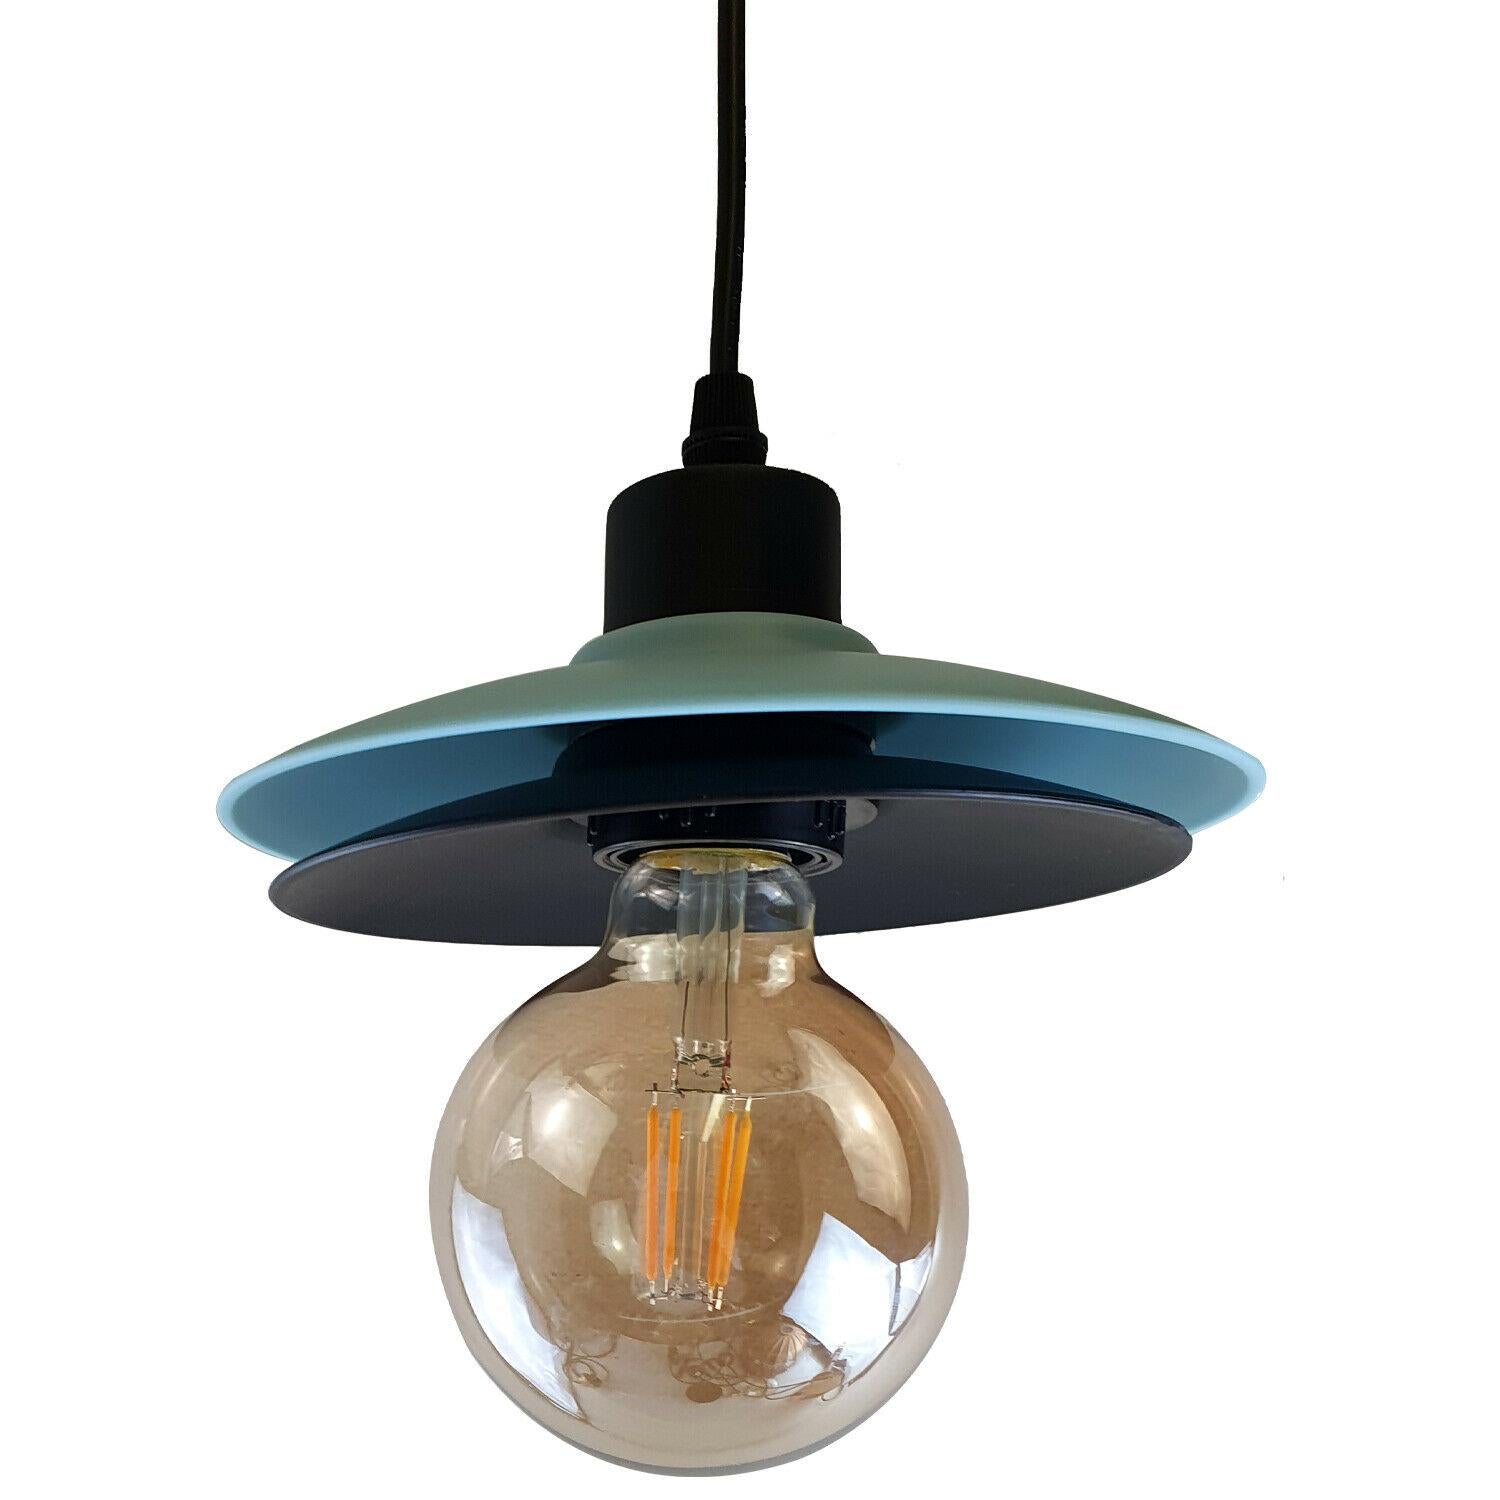 Double Shade Black And Blue Ceiling Hanging Pendant Light~1430 - LEDSone UK Ltd